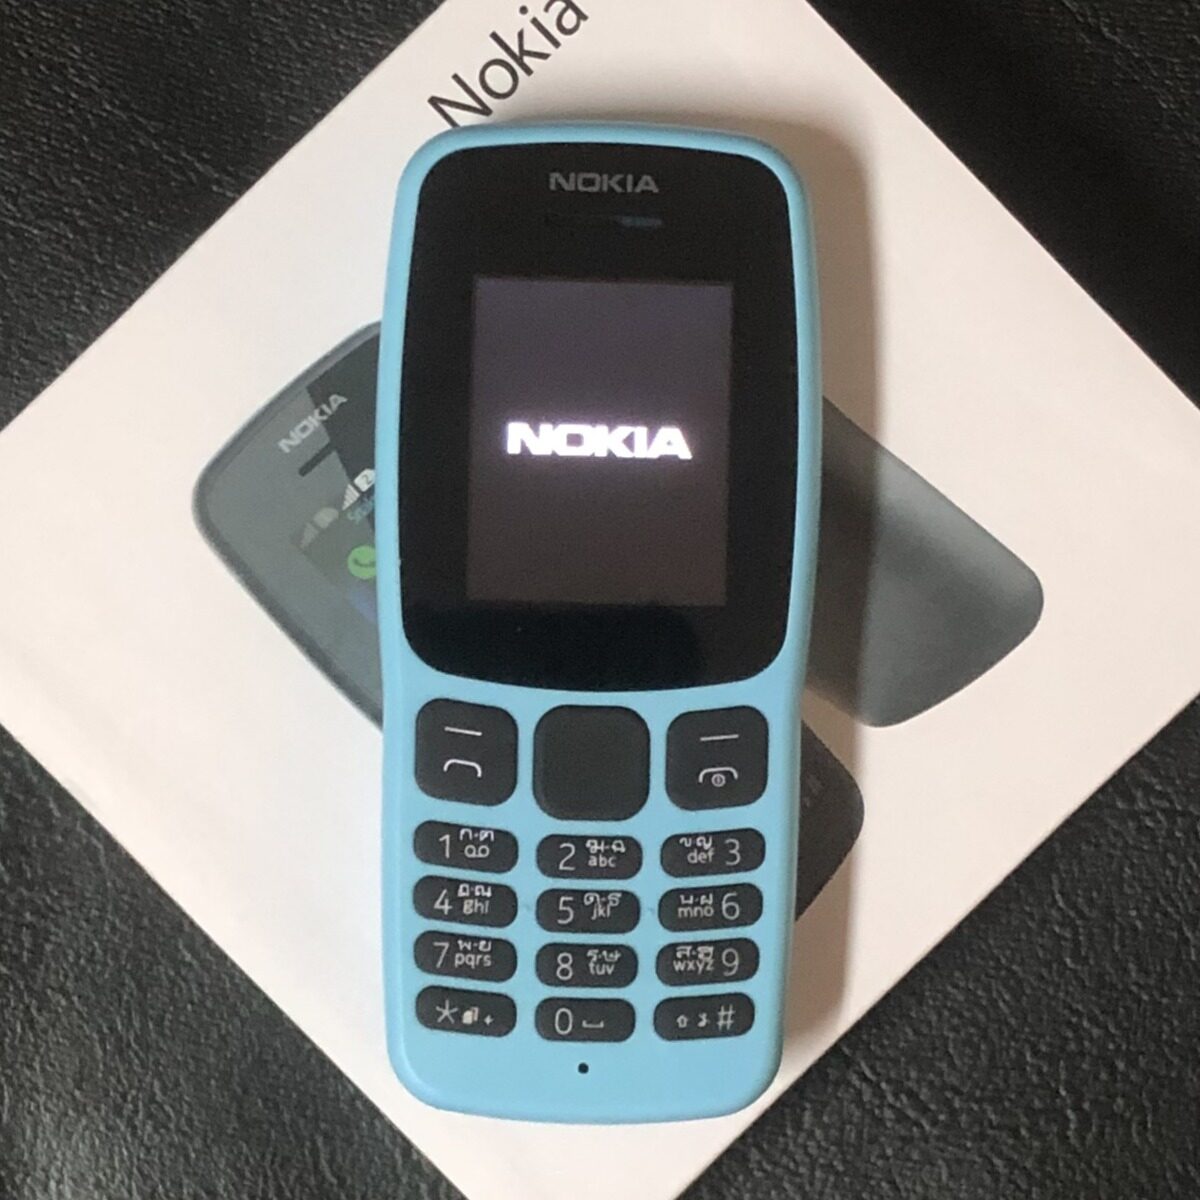 โทรศัพท์มือถือโนเกียปุ่มกด NOKIA PHONE 106 ) มี 2ซิม 4G เหมาะกับทุกวัย เล่นเฟสได้ รุ่นใหม่ 2020 ภาษาไทย